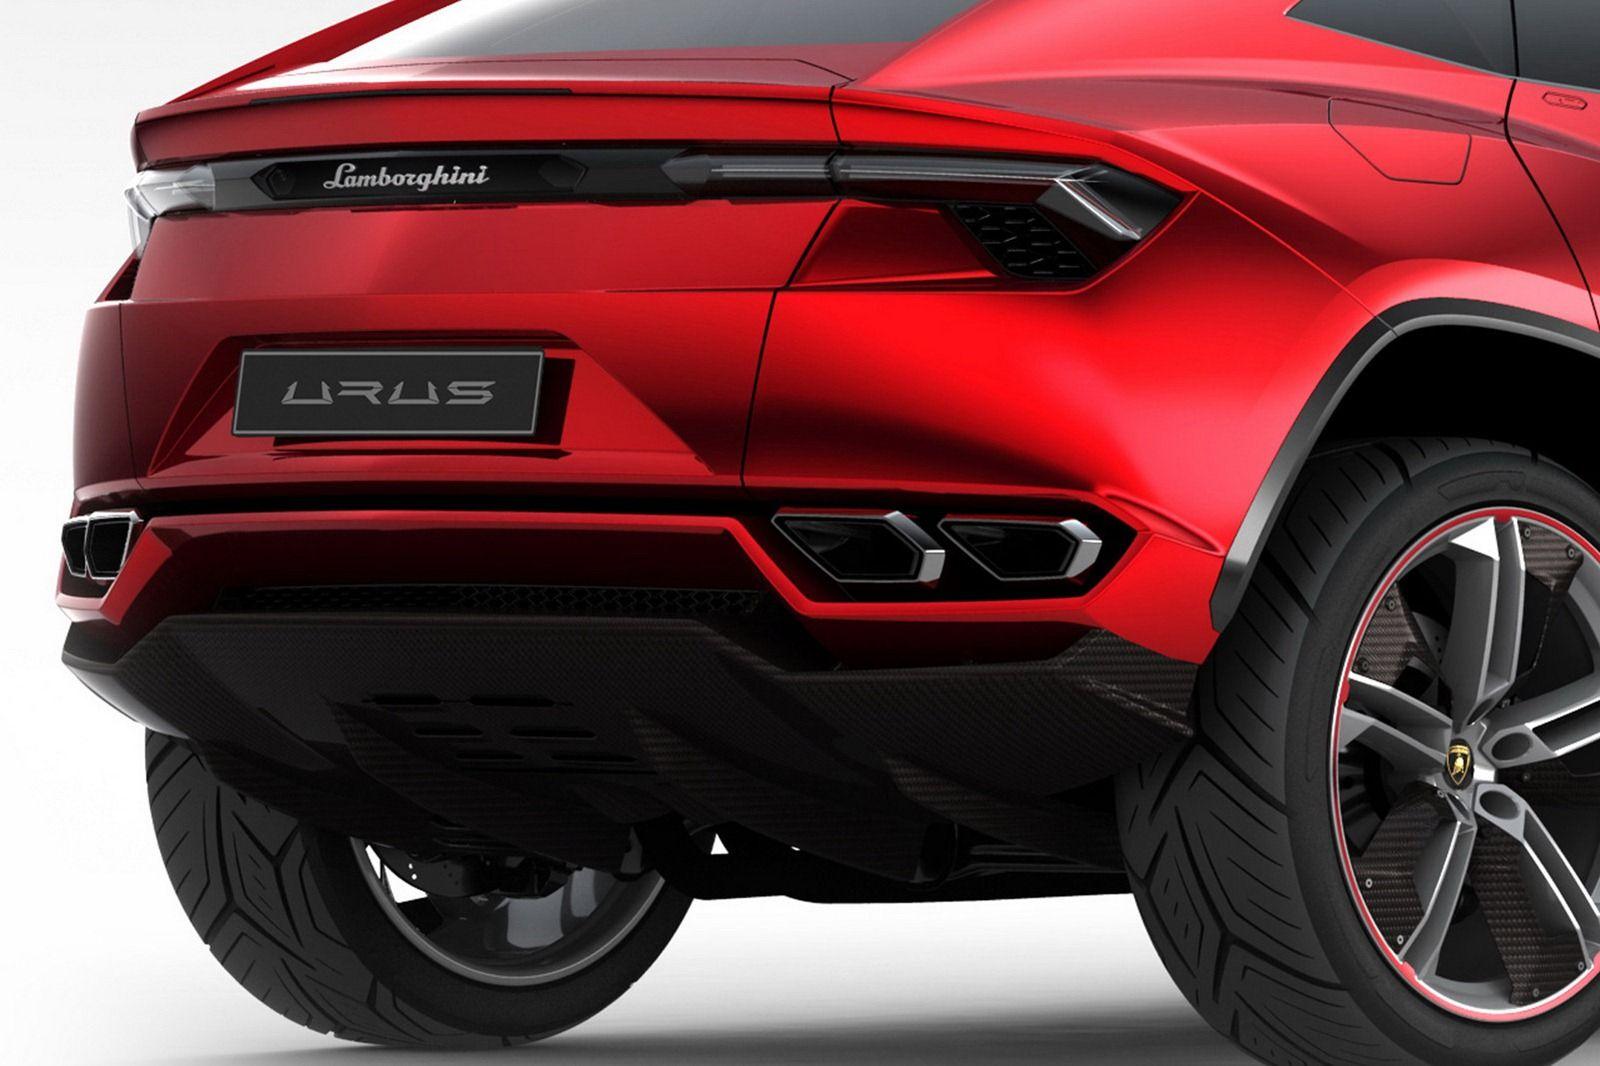 Lamborghini Urus SUV to go into production